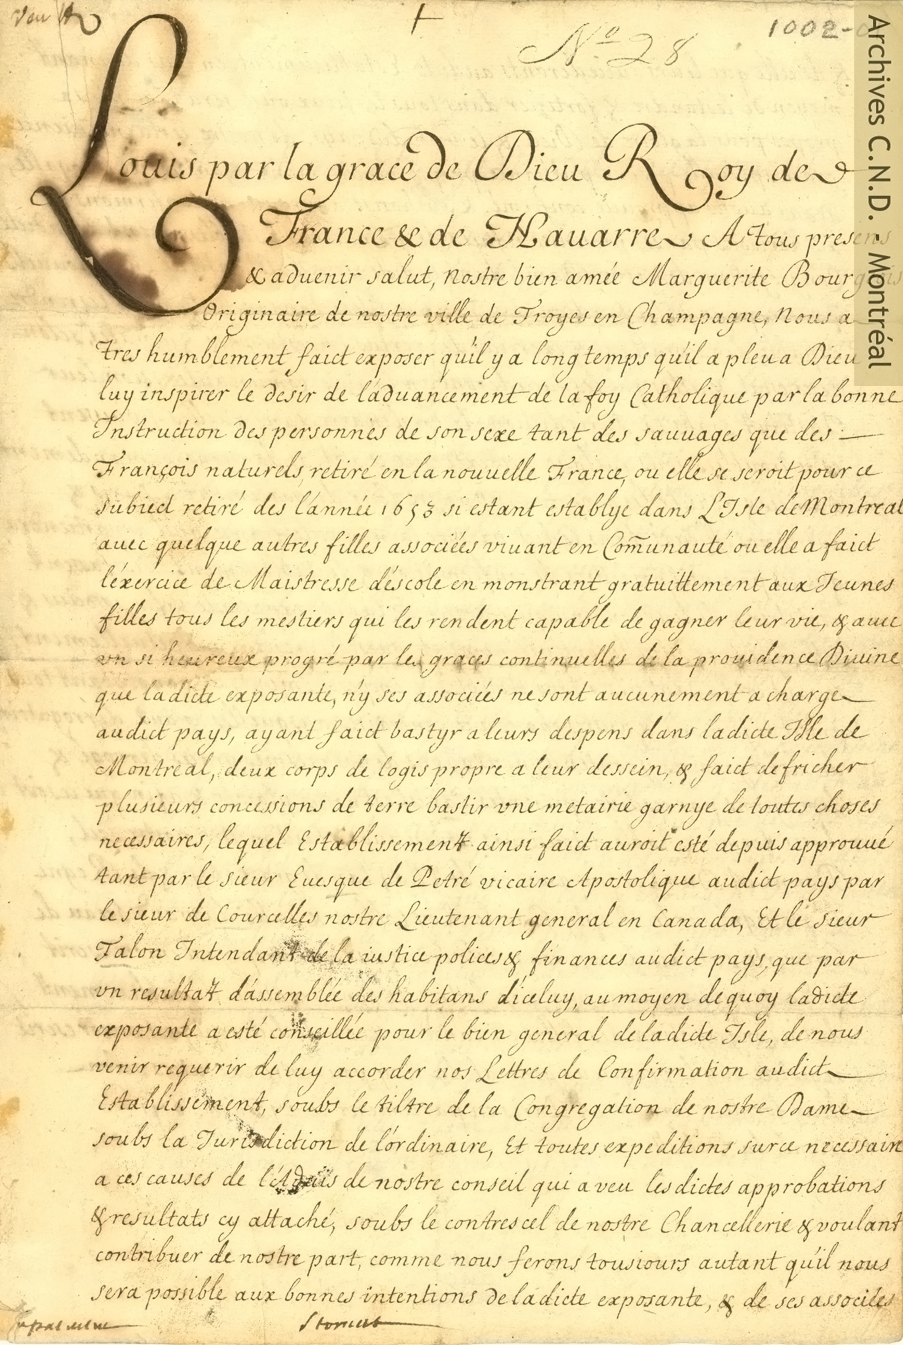 特許状の最初のページ